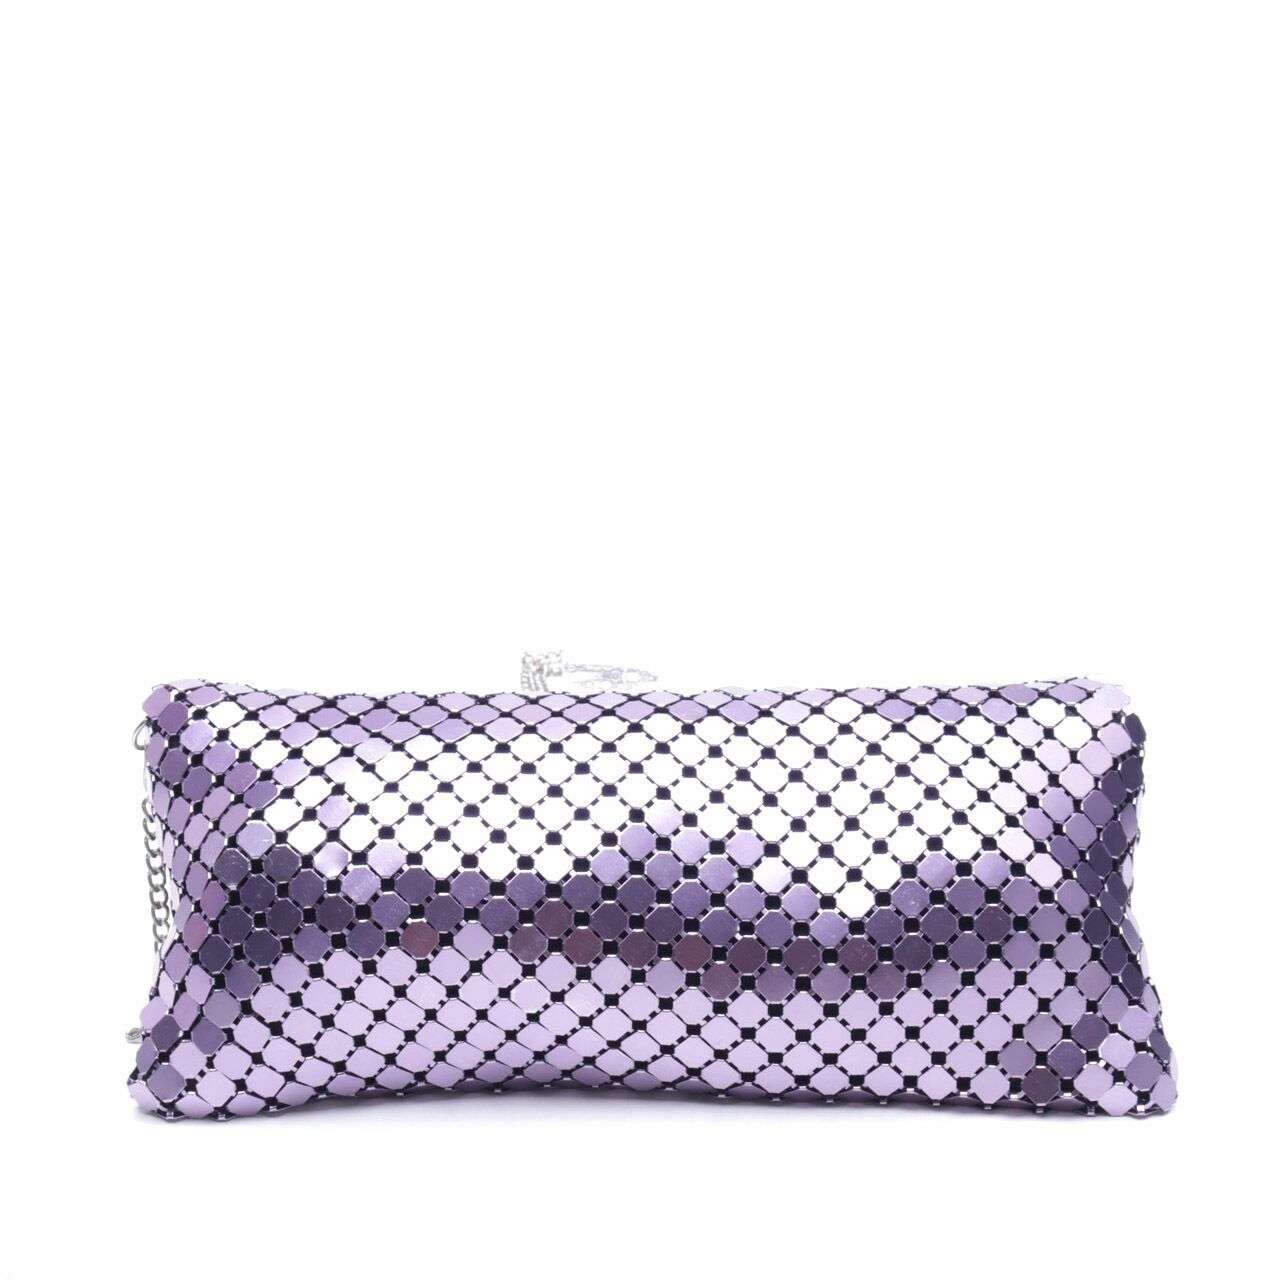 Forever 21 Purple Sling Bag